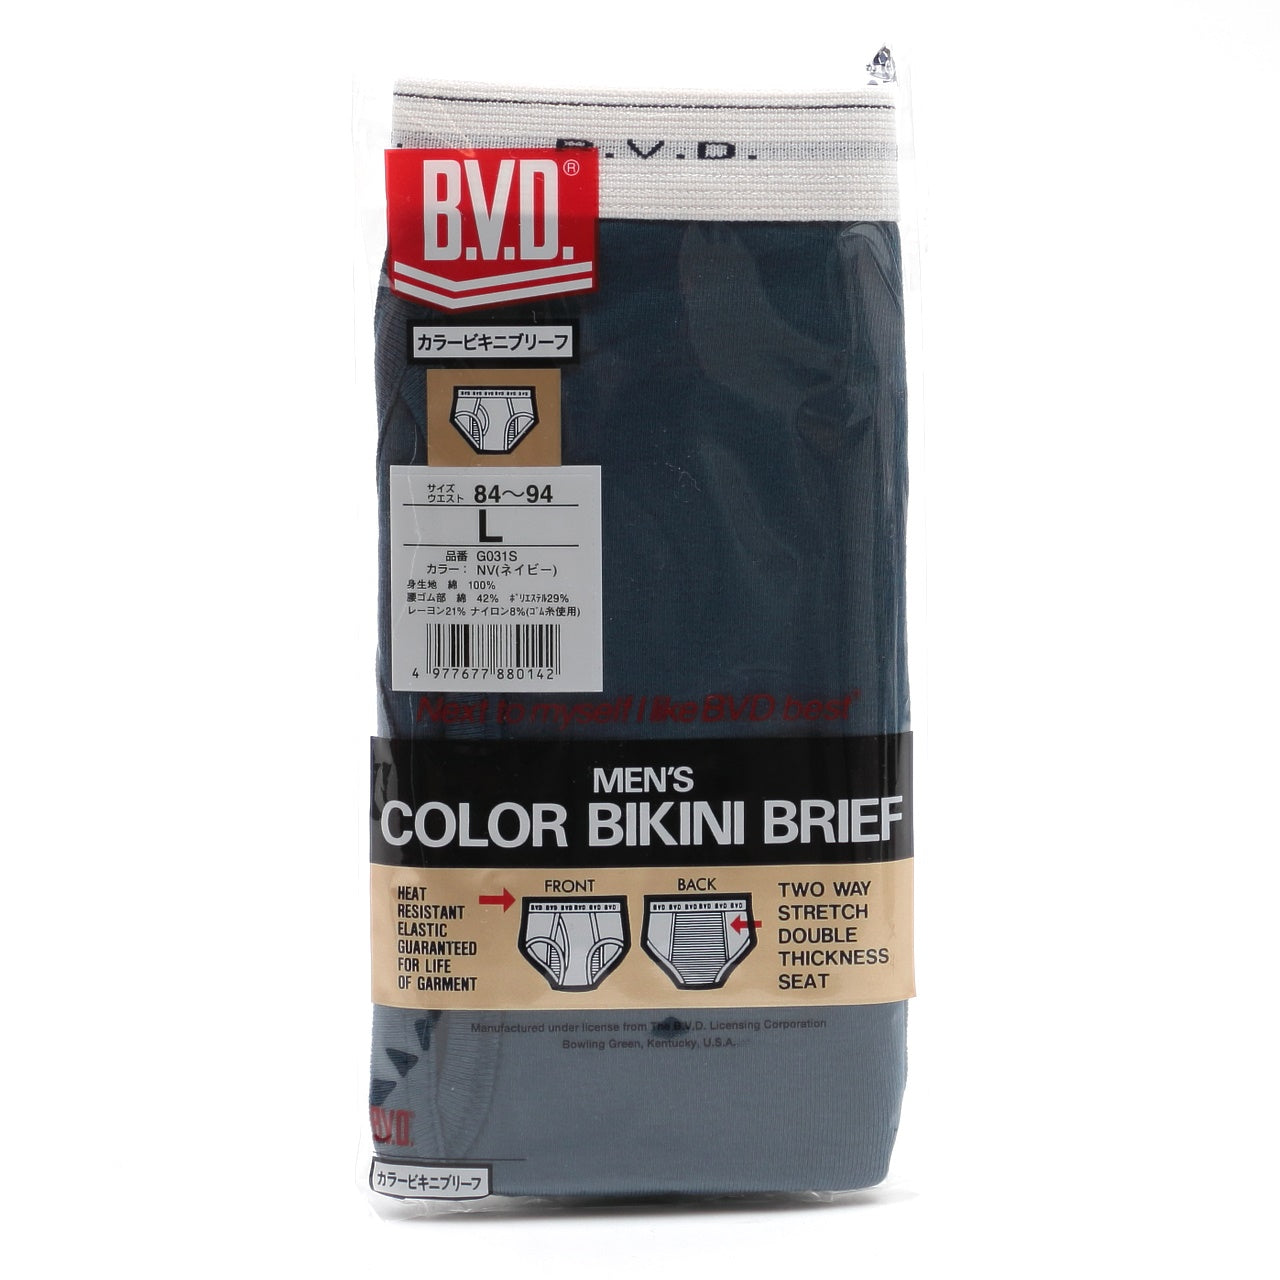 BVD ブリーフ ビキニ メンズ 下着 綿100% カラー 前開き M～LL bvd パンツ 肌着 インナー 男性 アンダーウェア コットン ブルー グレー レッド ネイビー ブラック